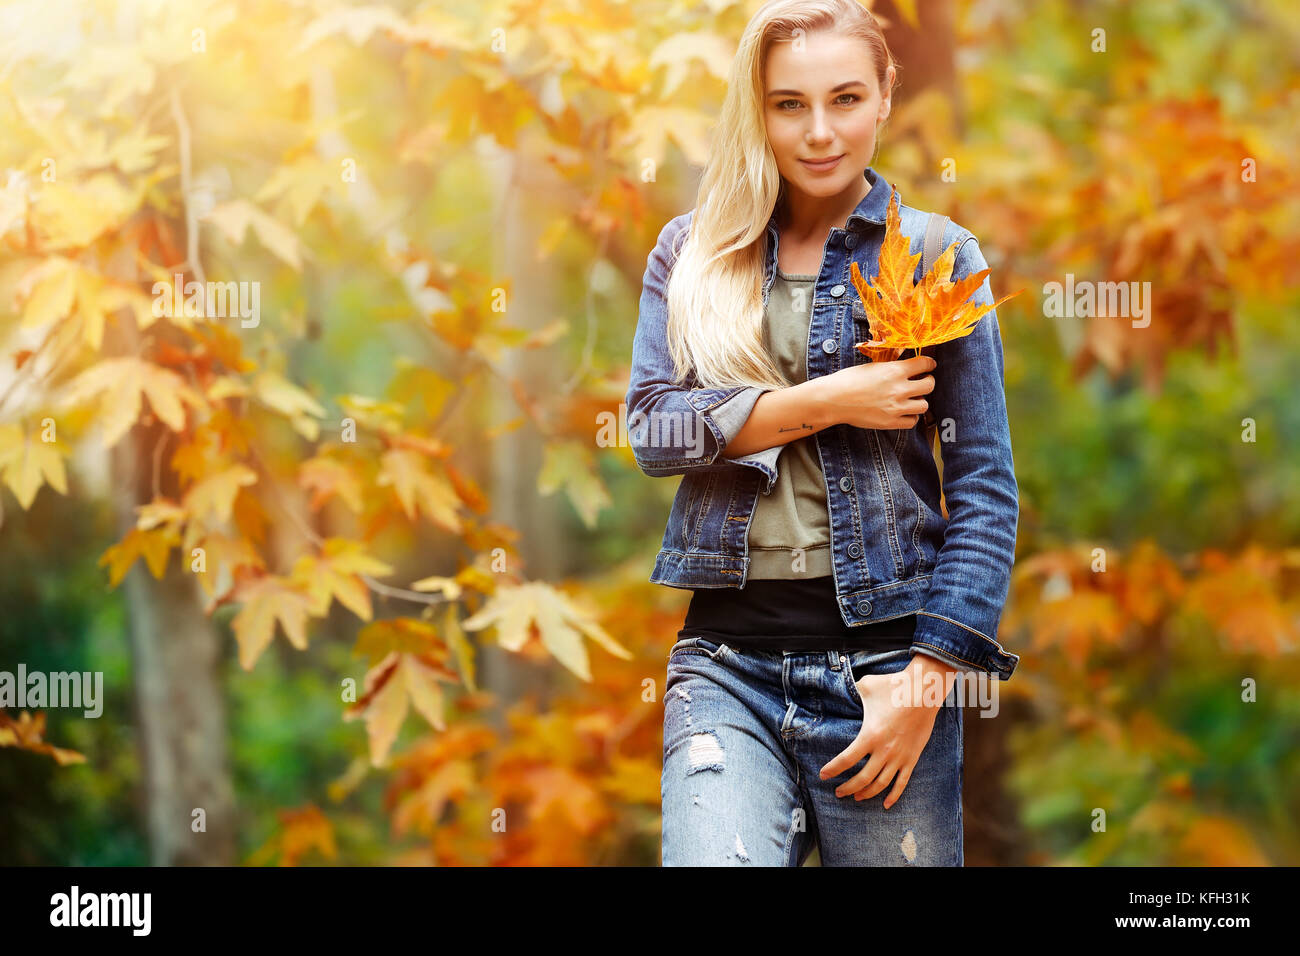 Porträt einer schönen blonden Frau Holding in der Hand schön trocken Gelb maple leaf über herbstliches Laub Hintergrund, Spaß im Herbst Park im Krieg Stockfoto